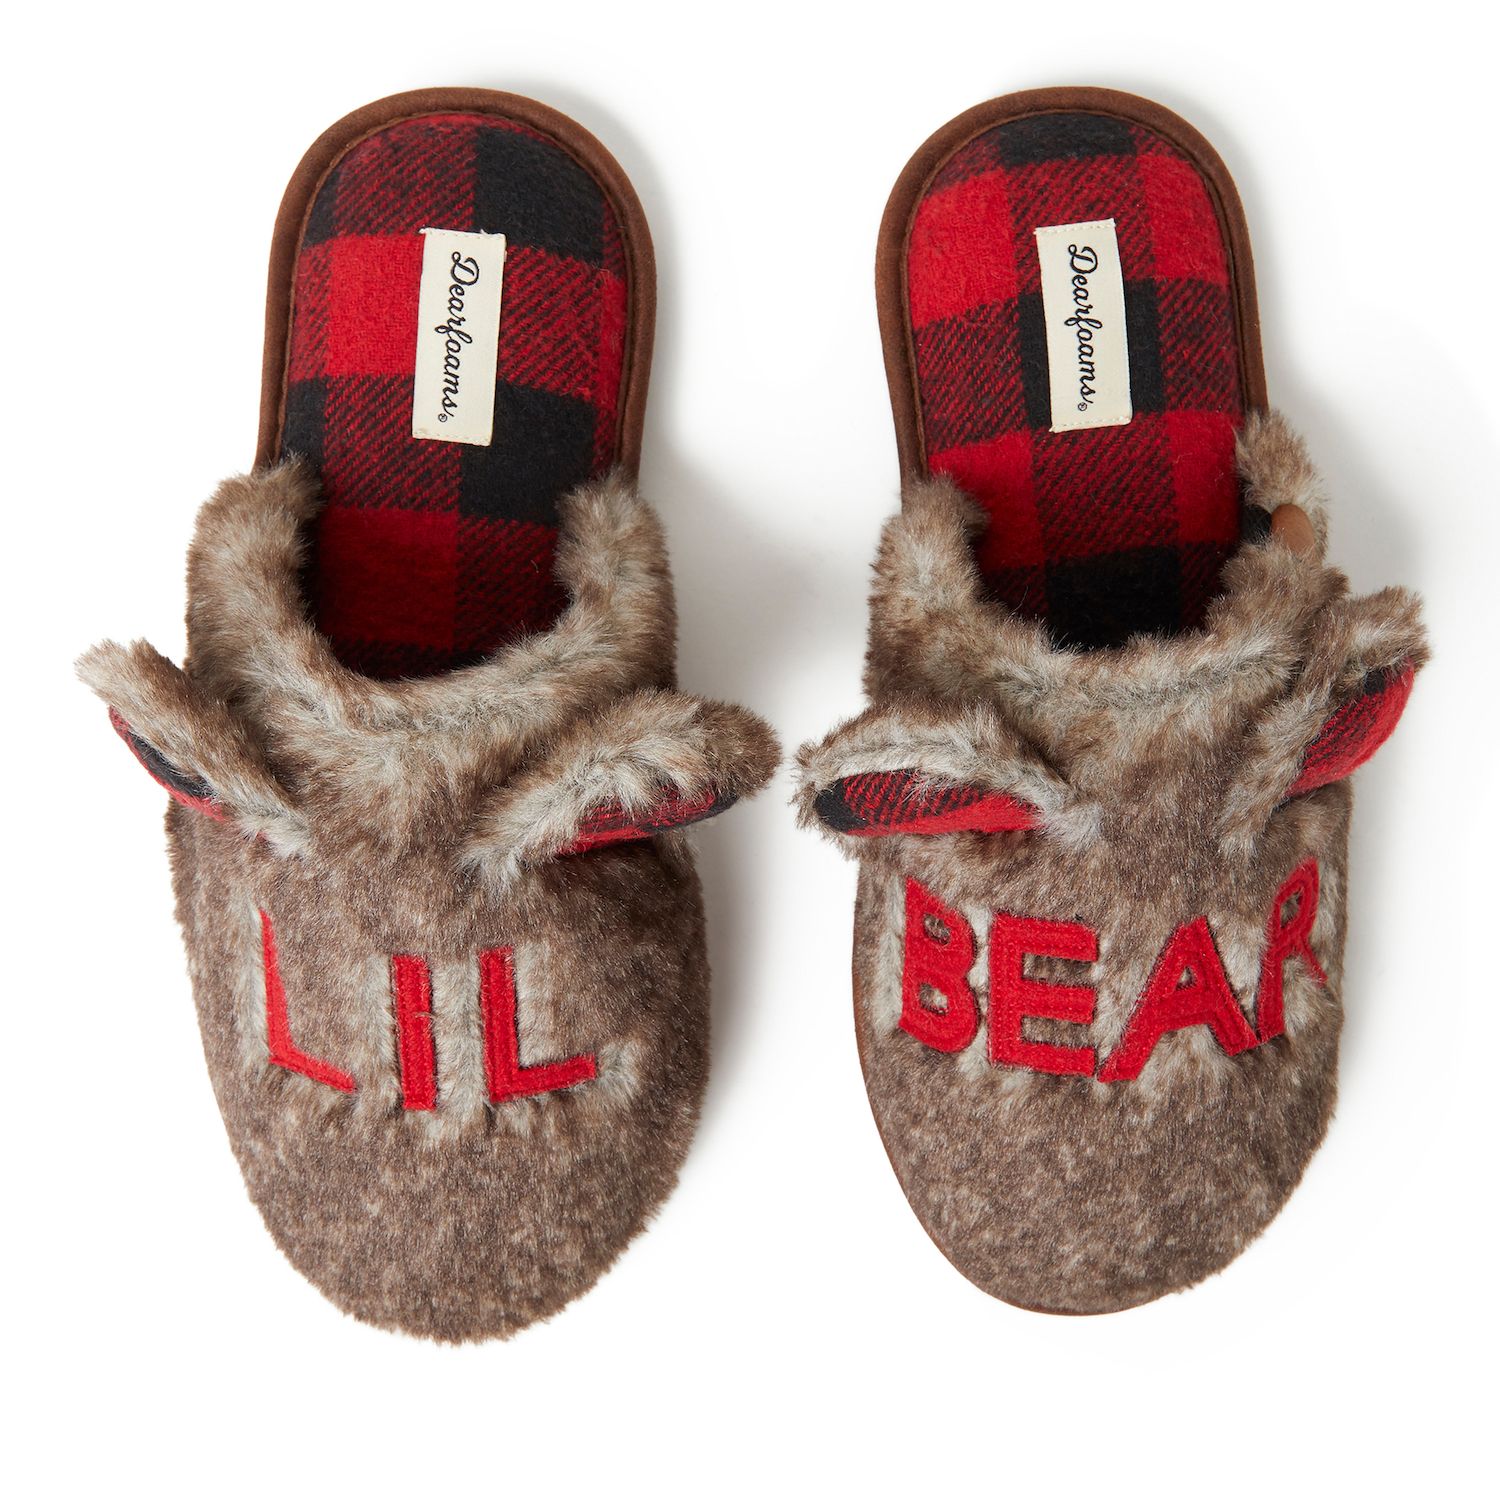 kohls lil bear slippers